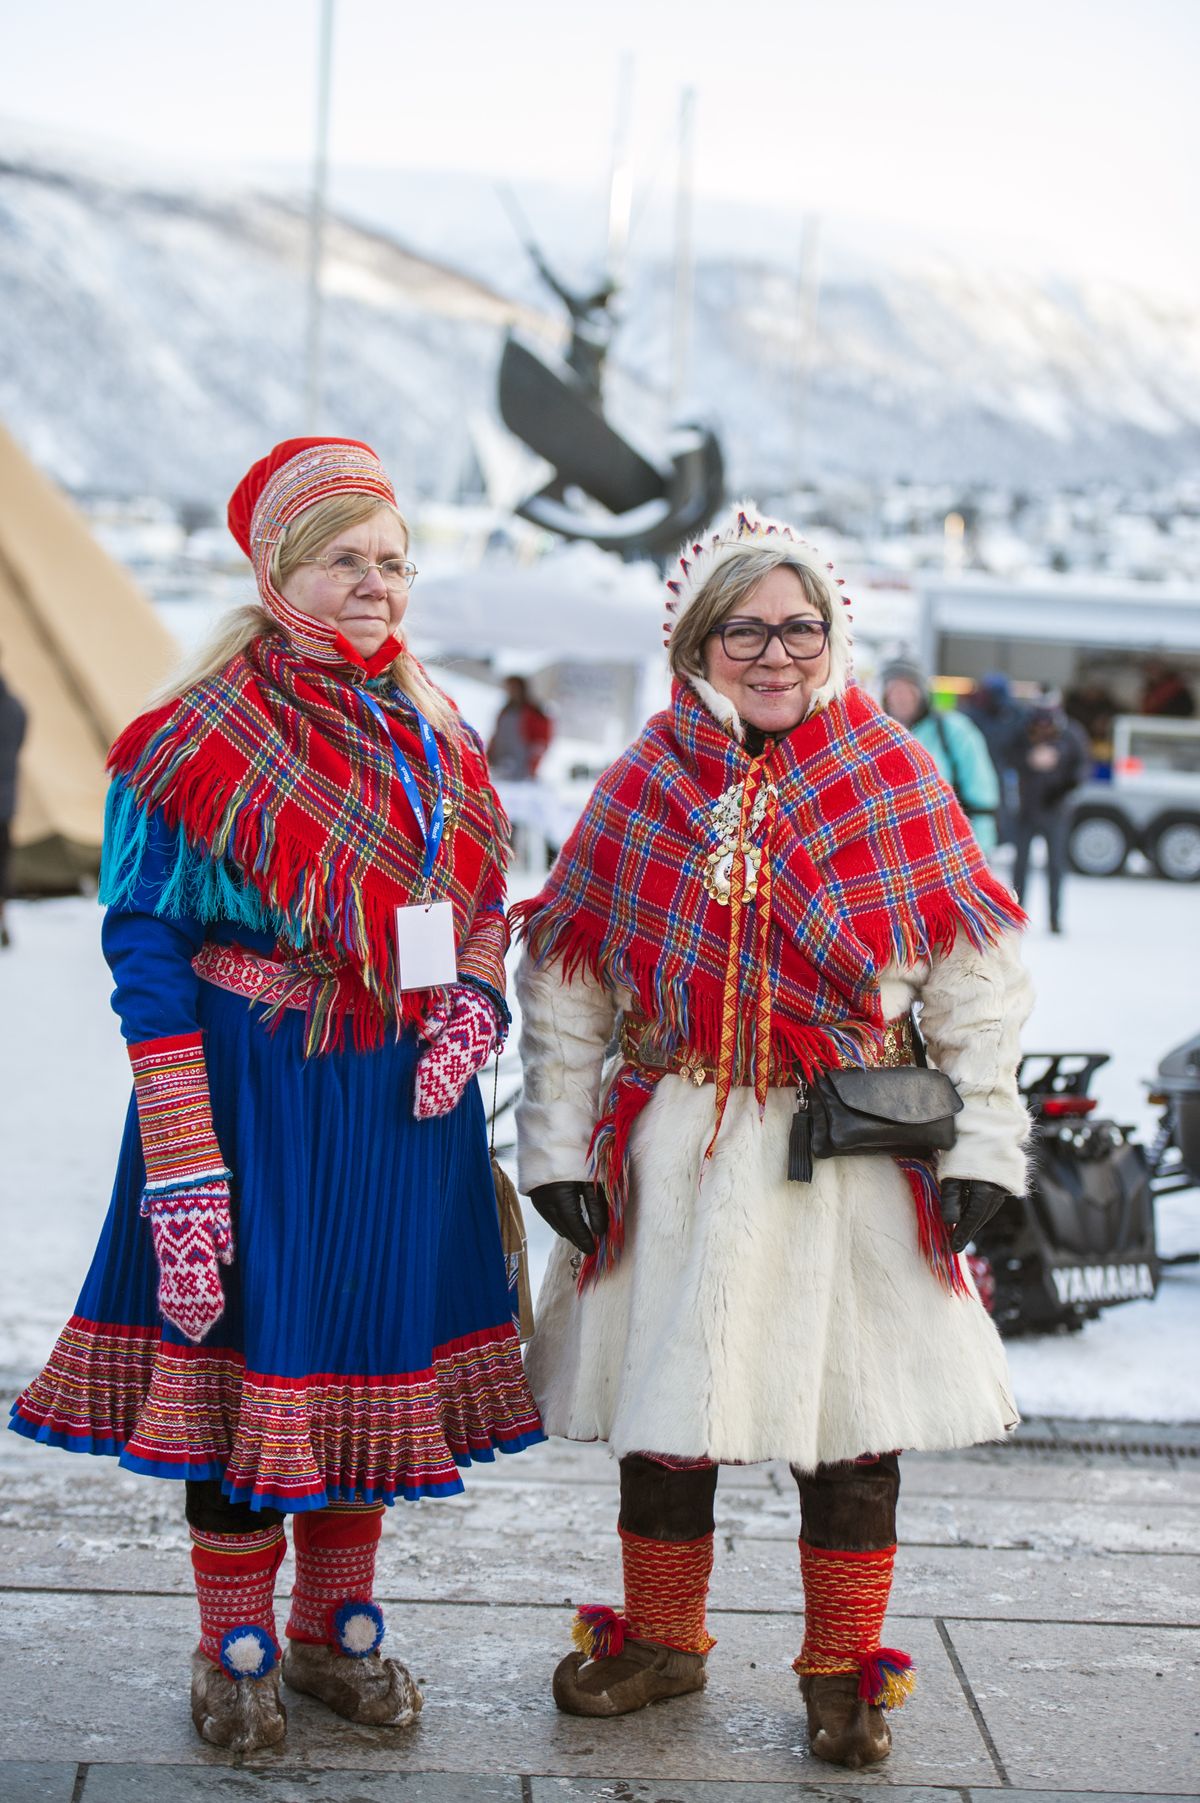 Sāmu sievietes tradicionālajos tautastērpos. Trumses reģions Norvēģijas ziemeļos.